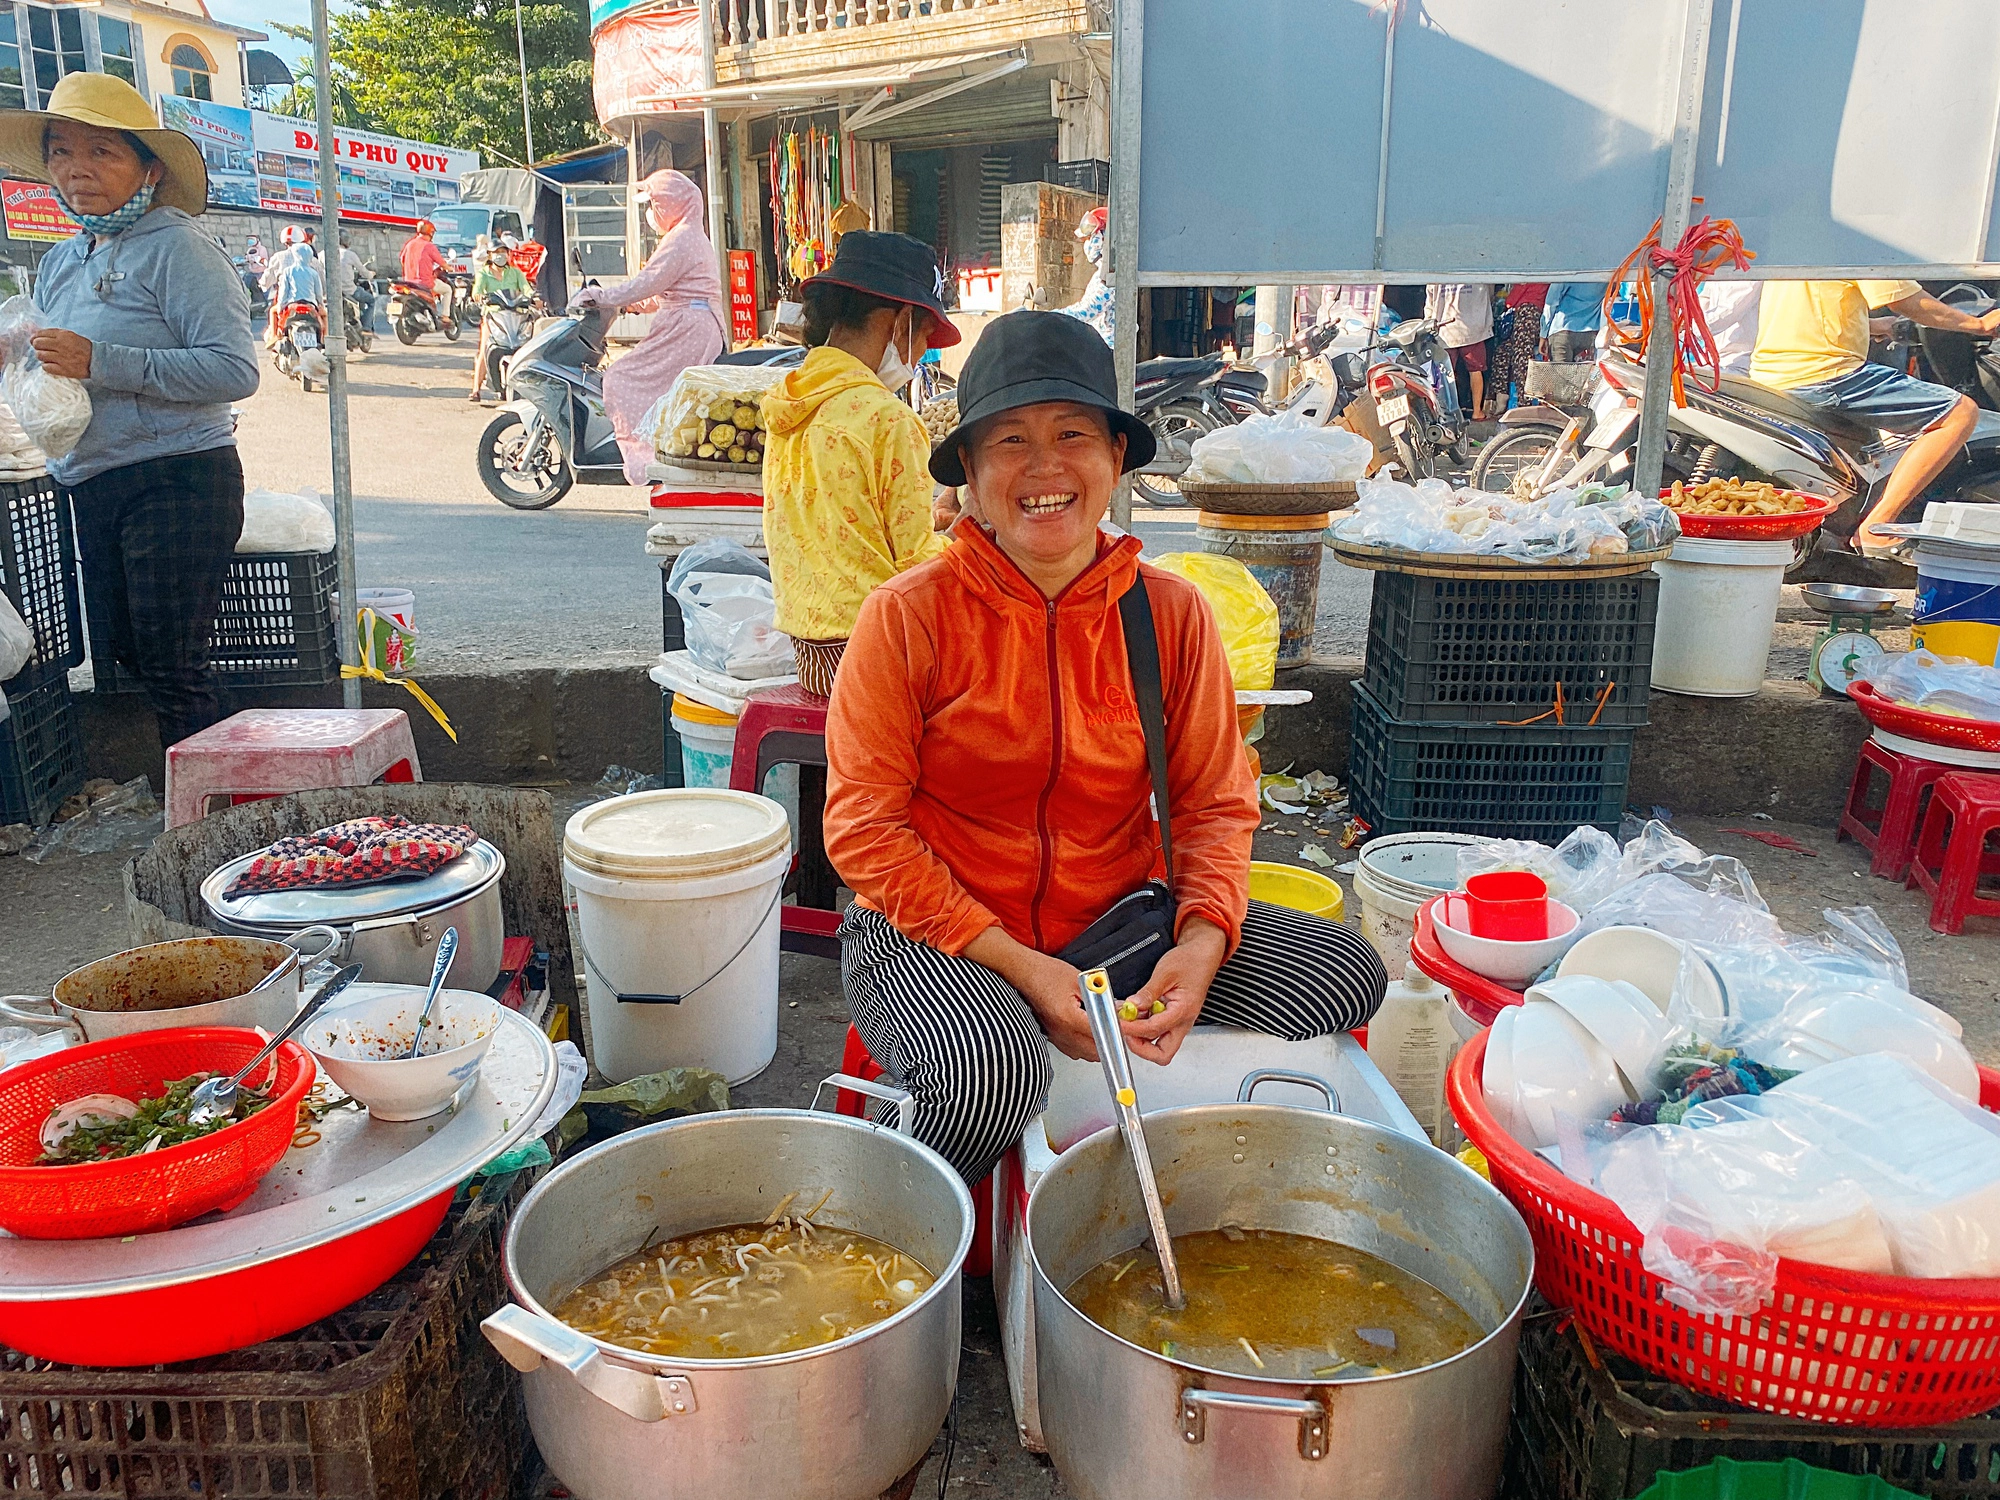 Món ăn lạ mà quen từ làng quê: Bánh canh bột lộn thanh tao chỉ có ở xứ Huế